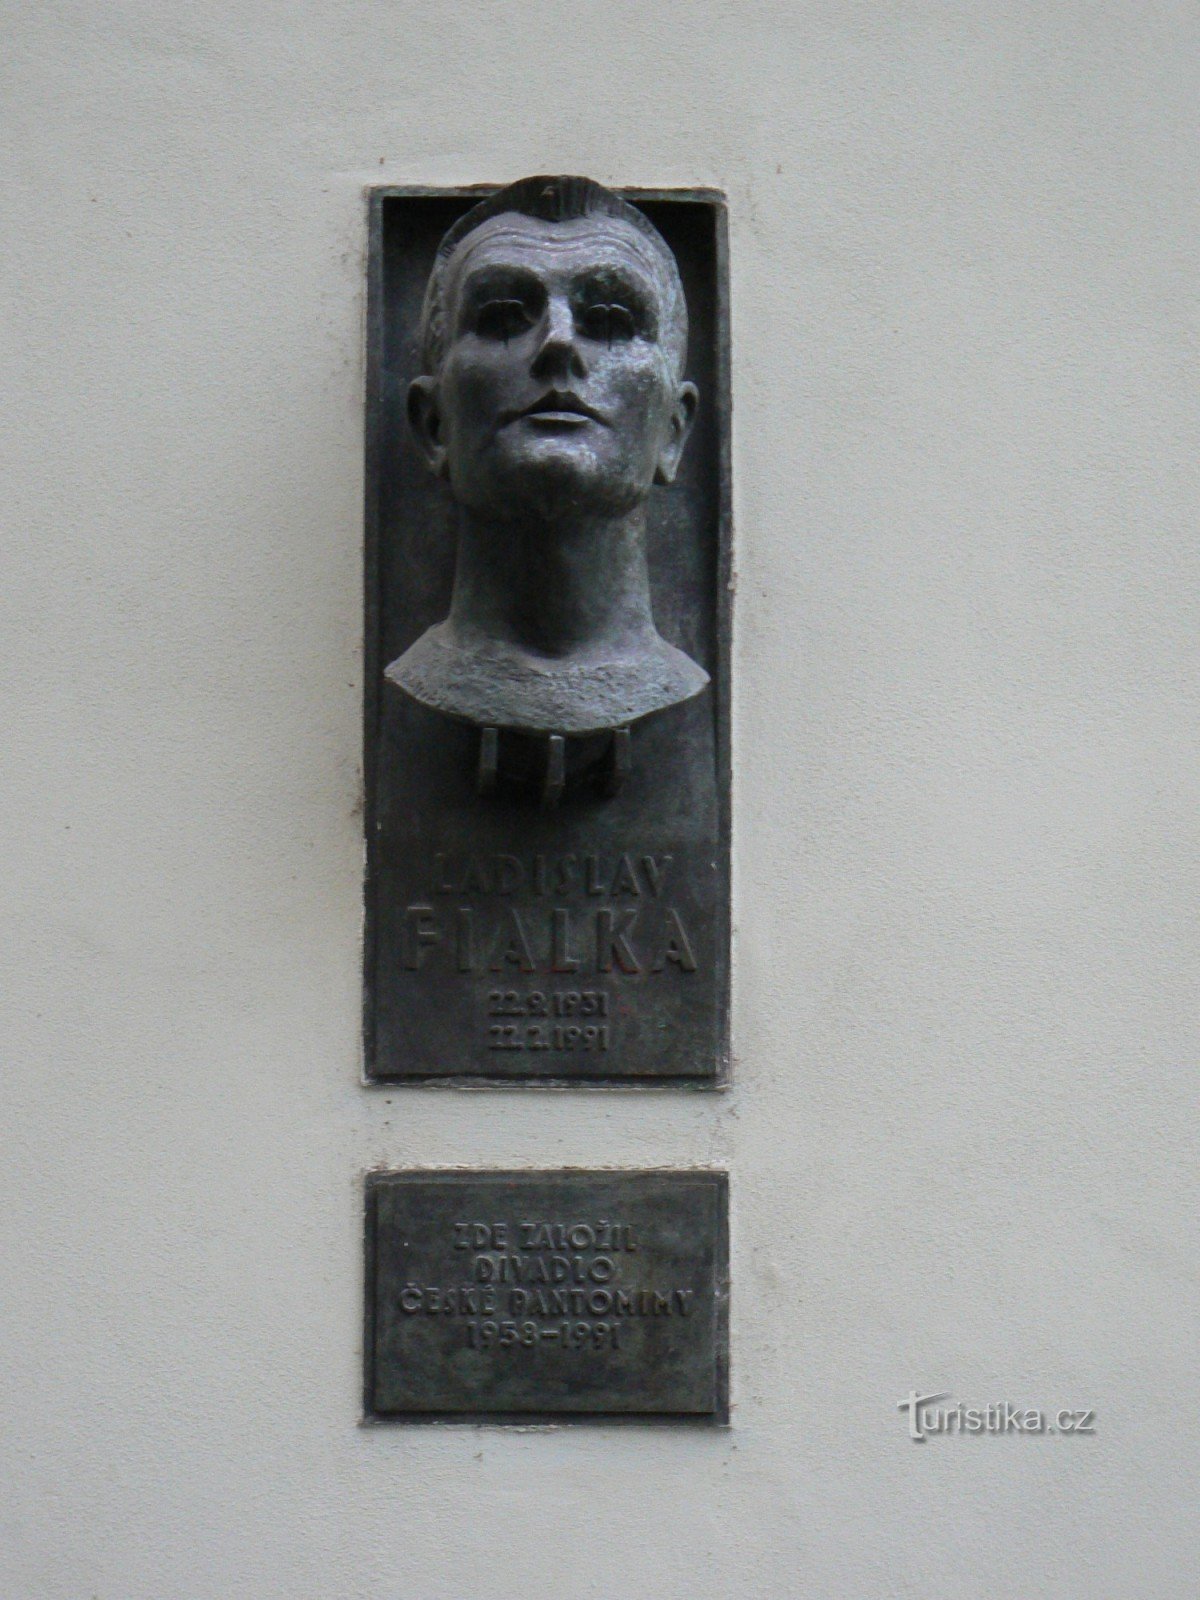 Placă memorială Ladislav Fialka